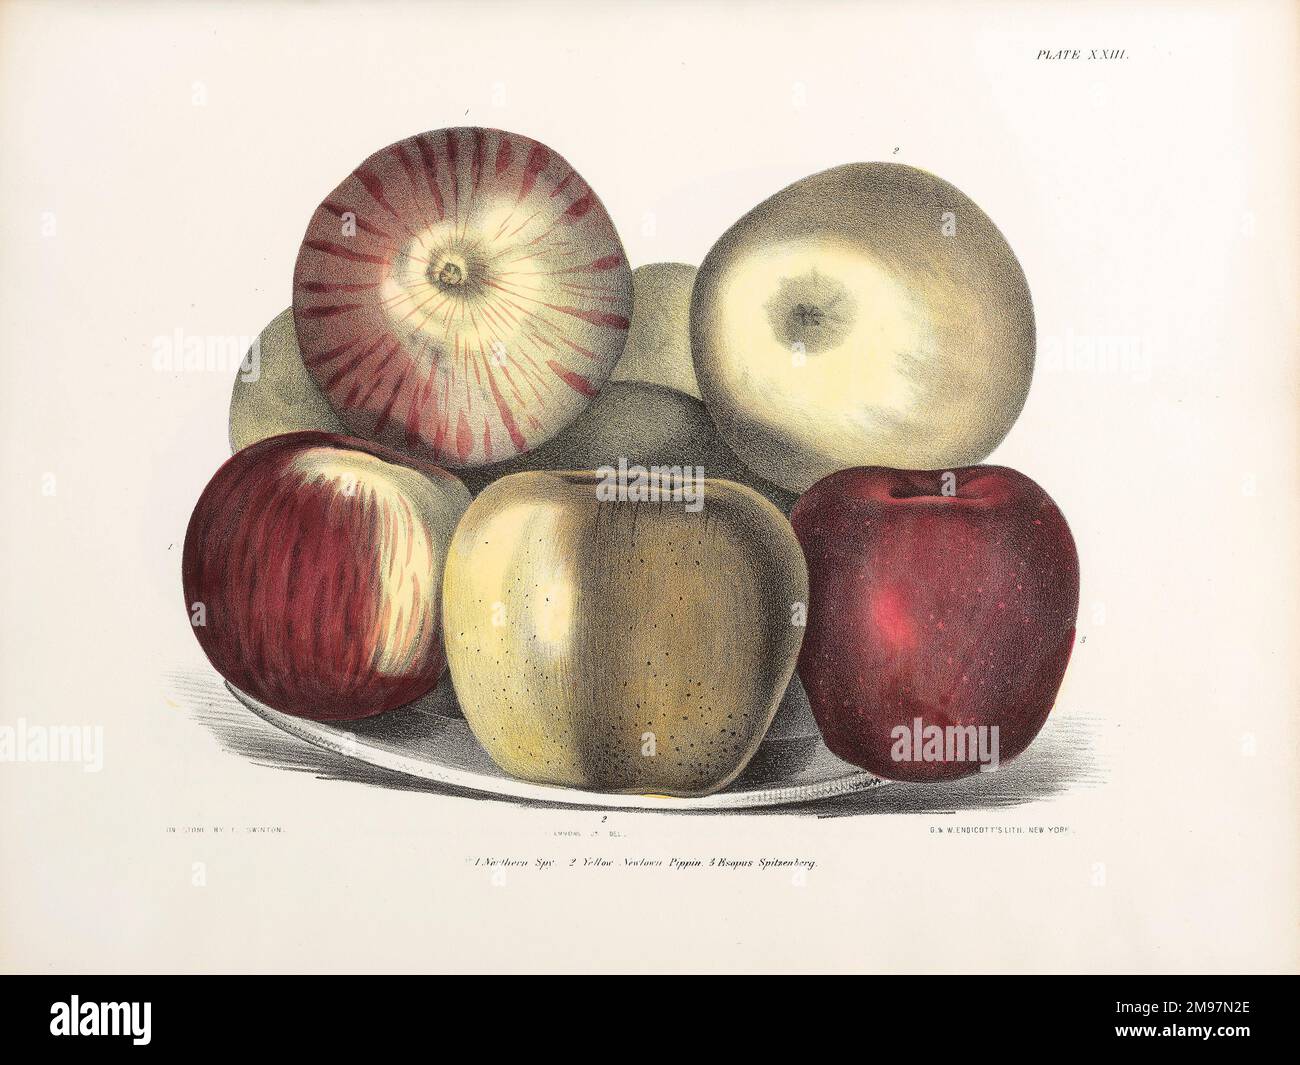 Äpfel, drei Sorten. Lithograph von Ebenezer Emmons, Agriculture of New York: vol. 3 - Fruits. Platte XXIII. Stockfoto